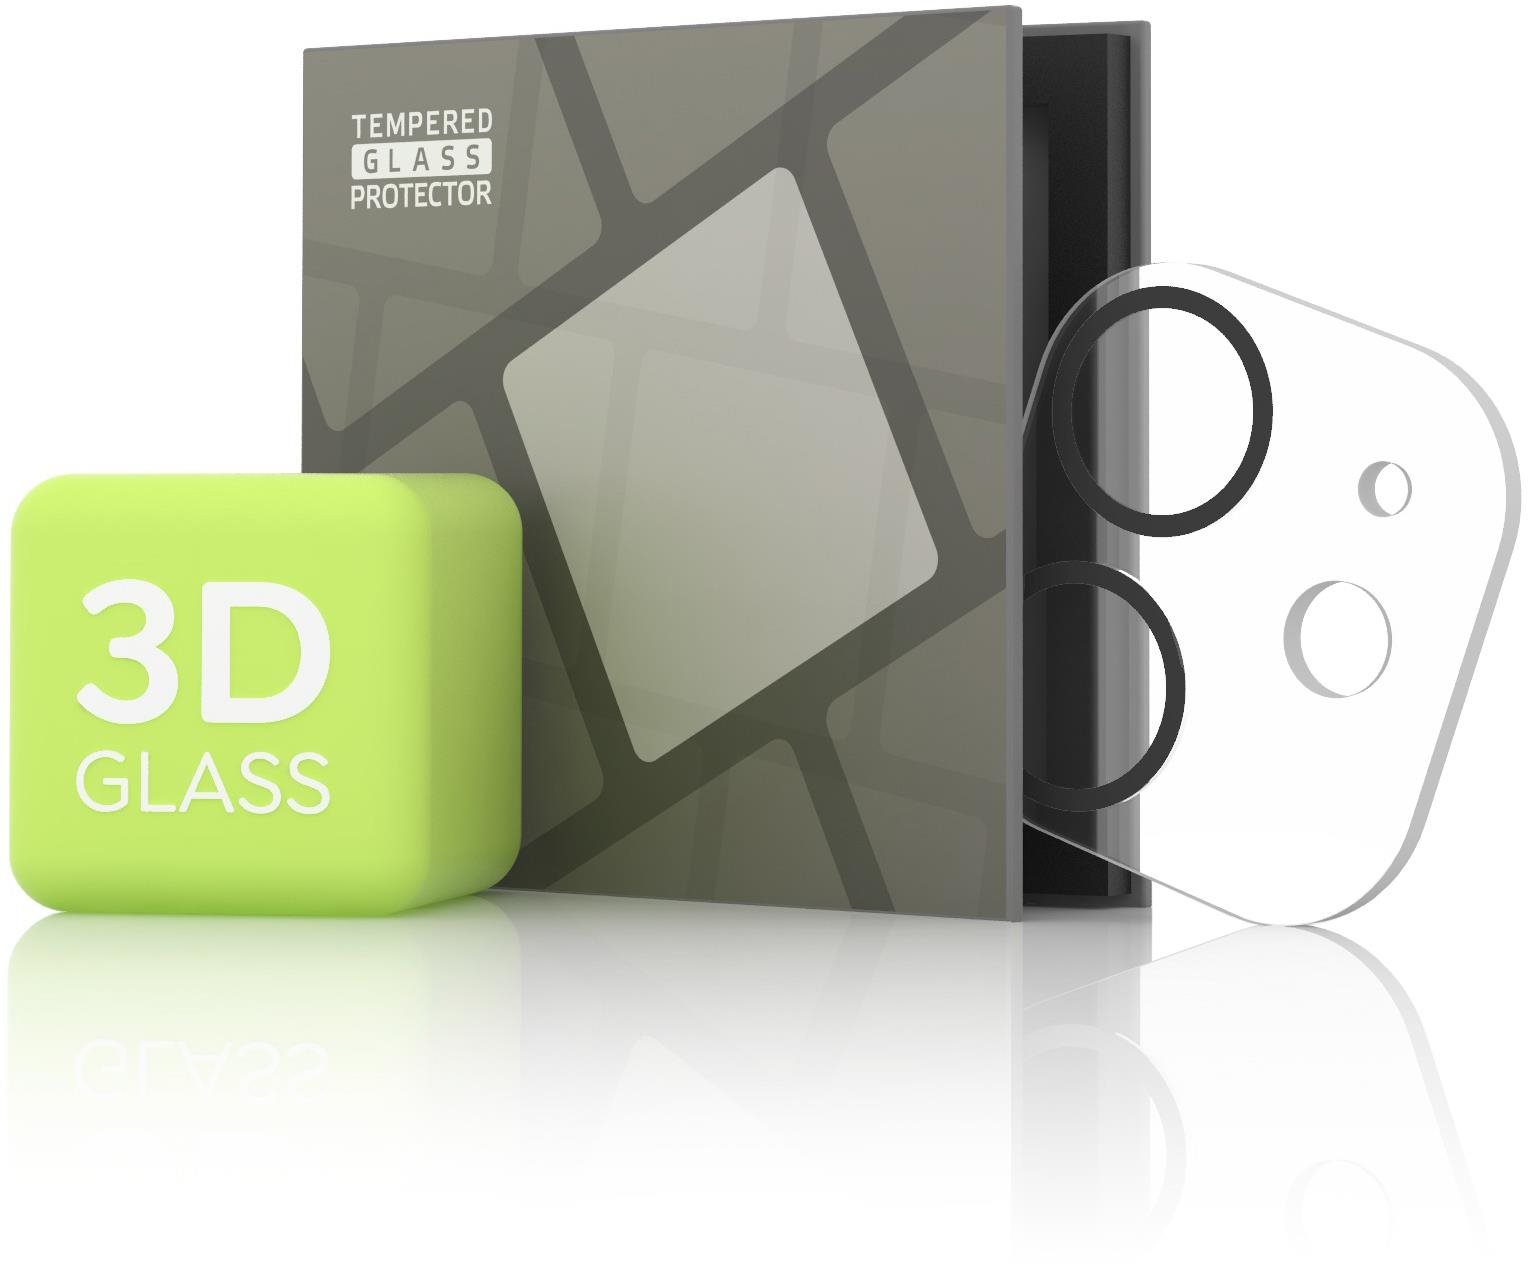 Tempered Glass Protector az iPhone 11 / 12 mini kamerájához, fekete